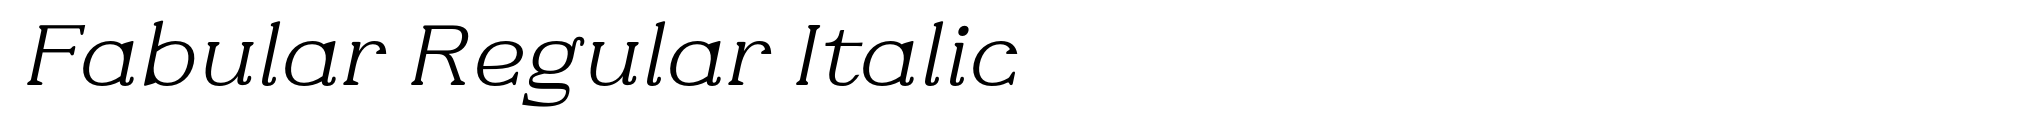 Fabular Regular Italic image